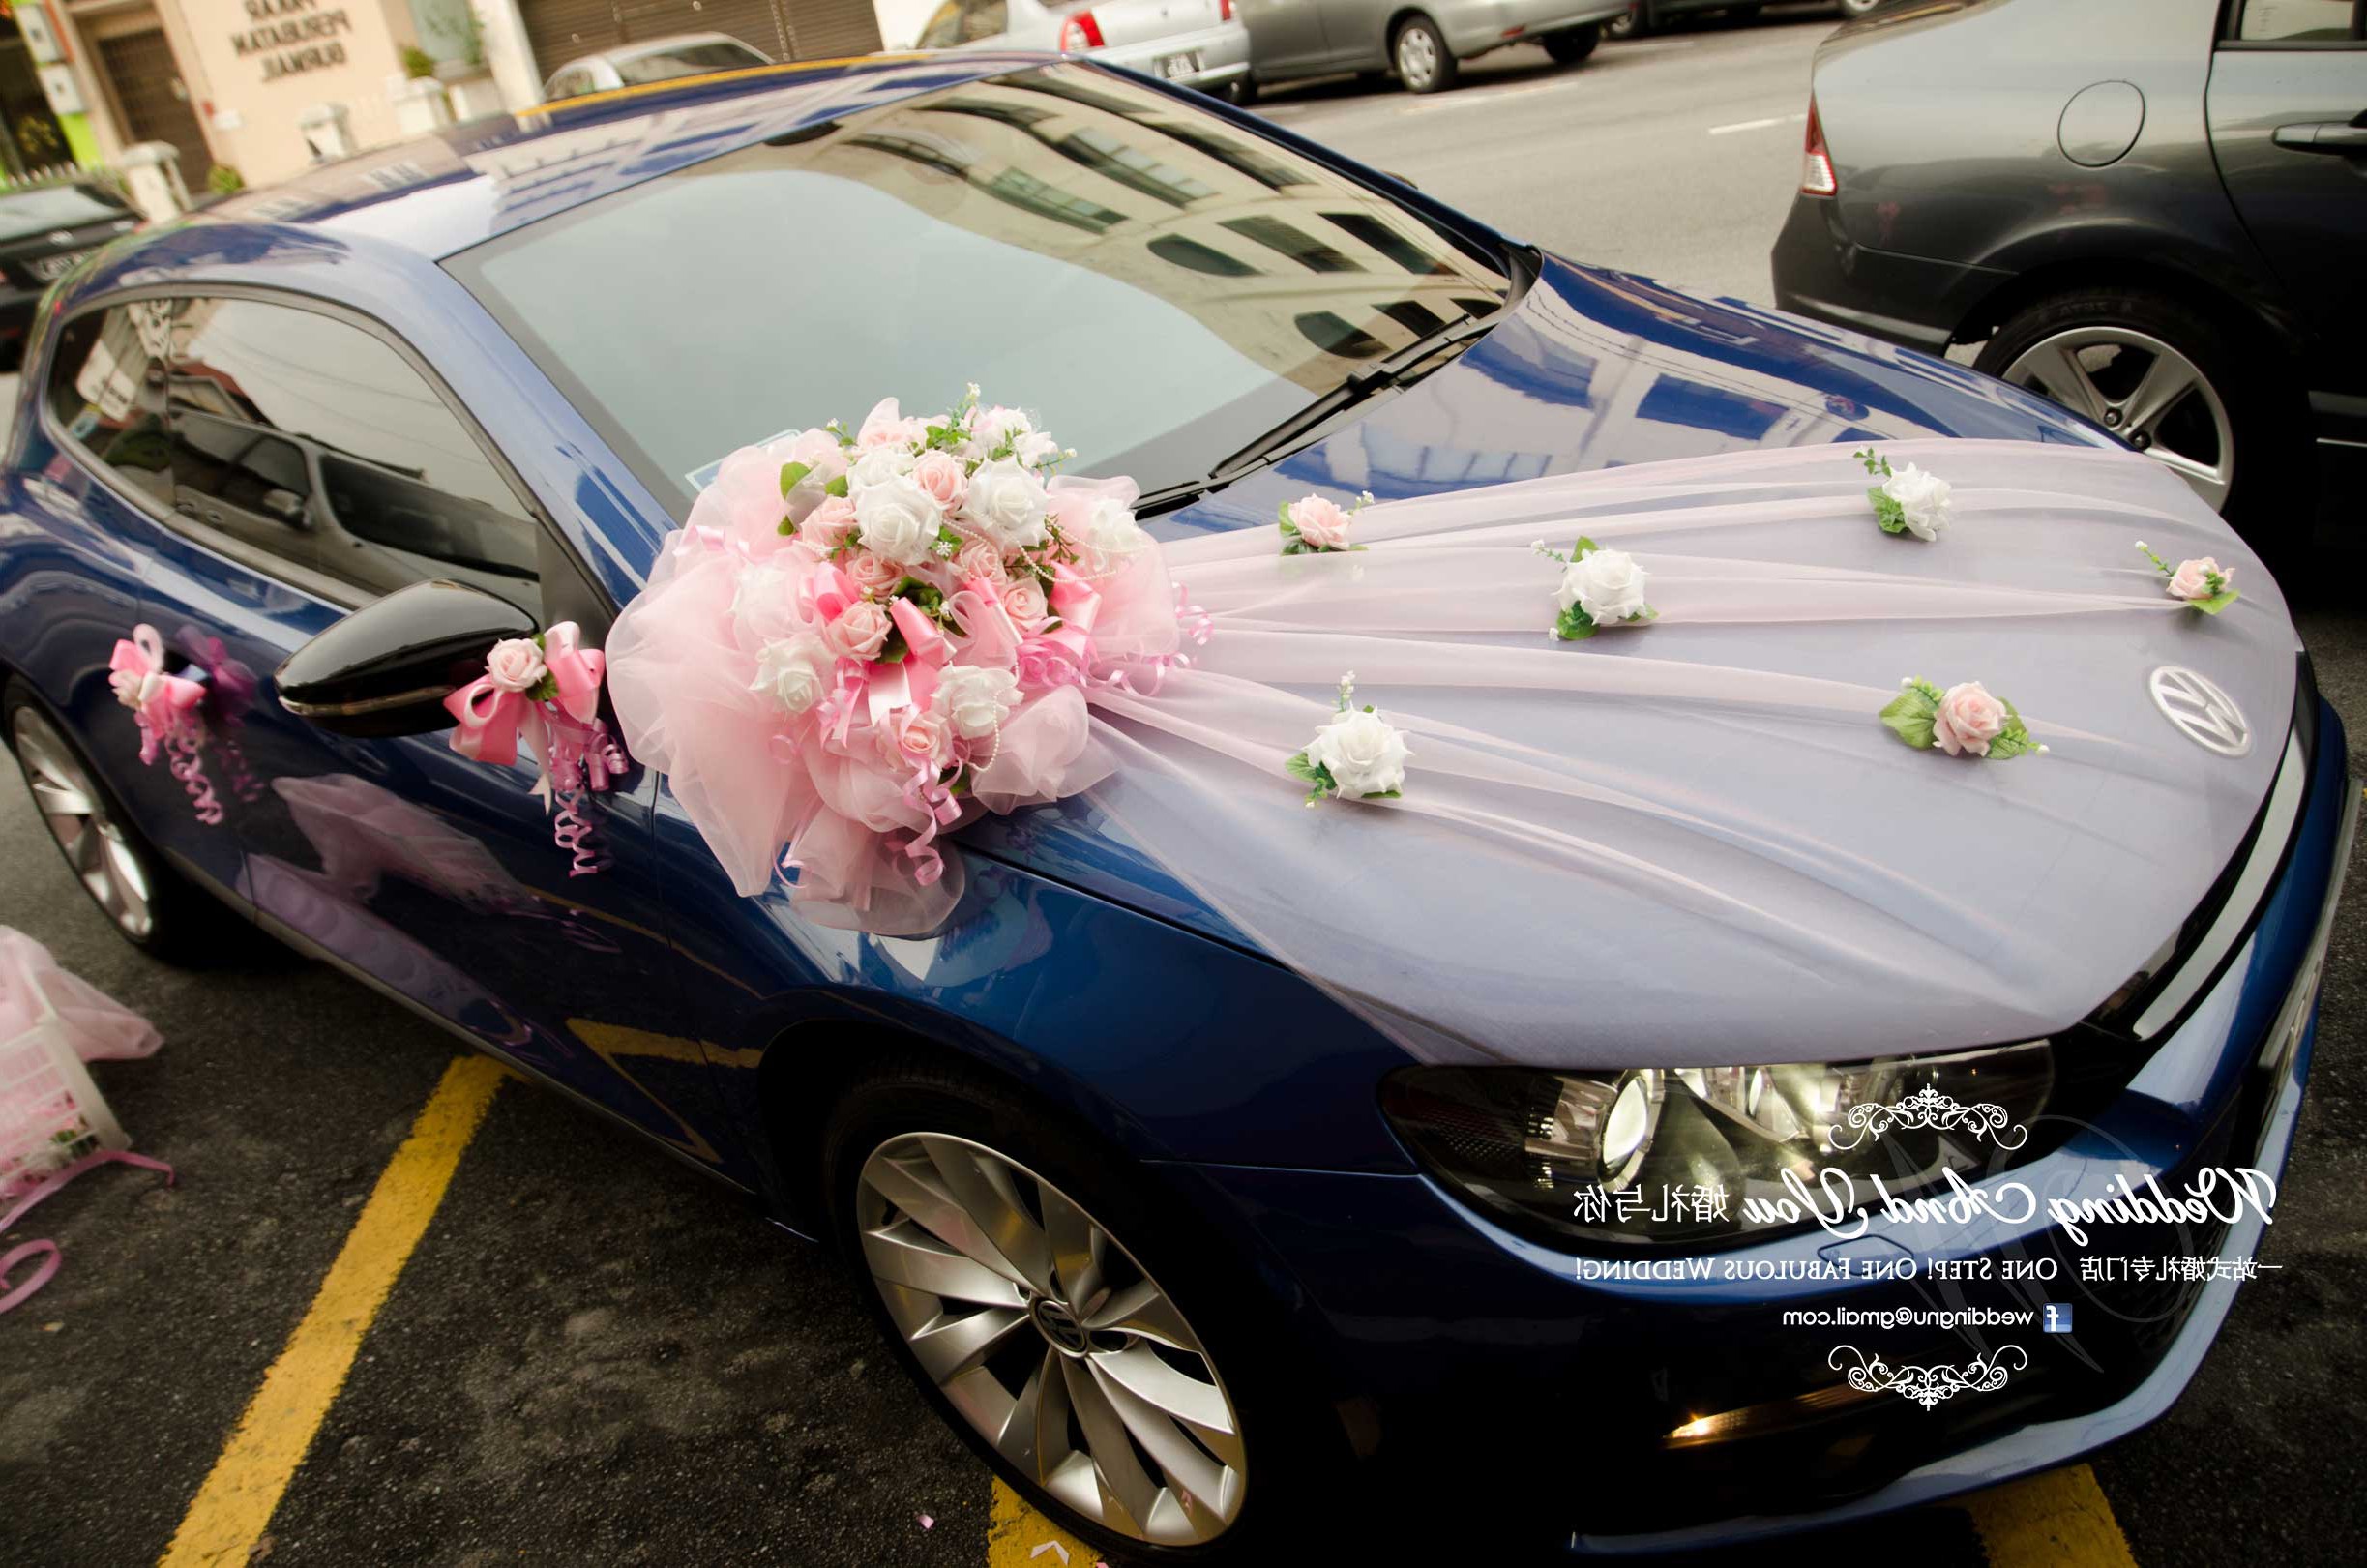 Decorated Car for Wedding Image Luxury Wedding Car Decoration Car ...